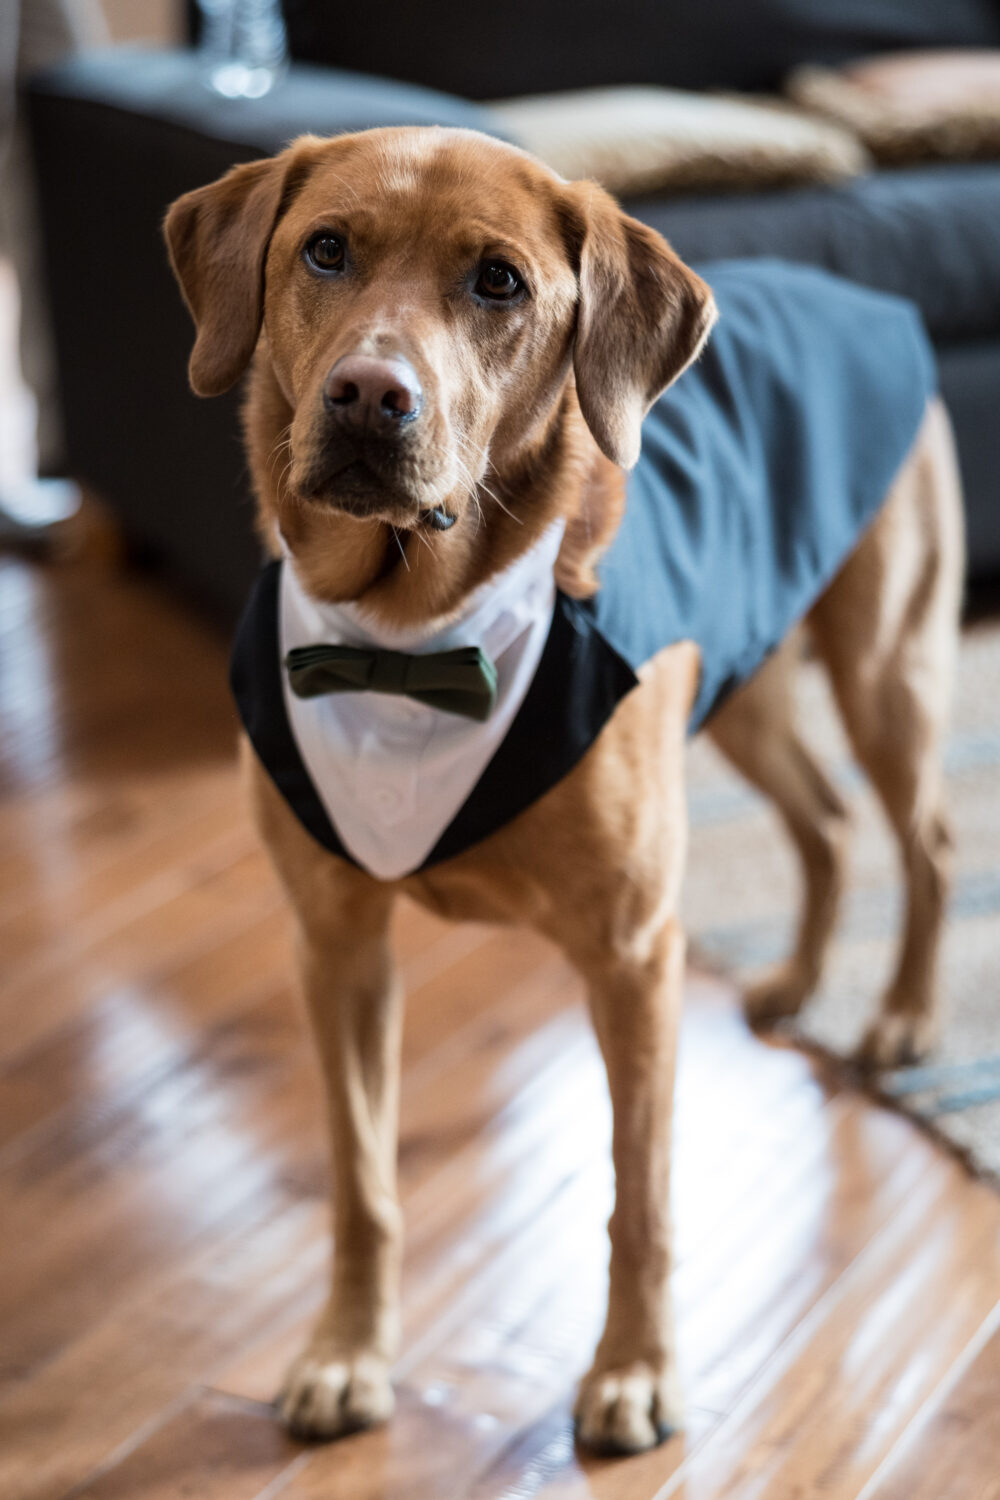 Wedding tuxedo for a labrador dog ring bearer.